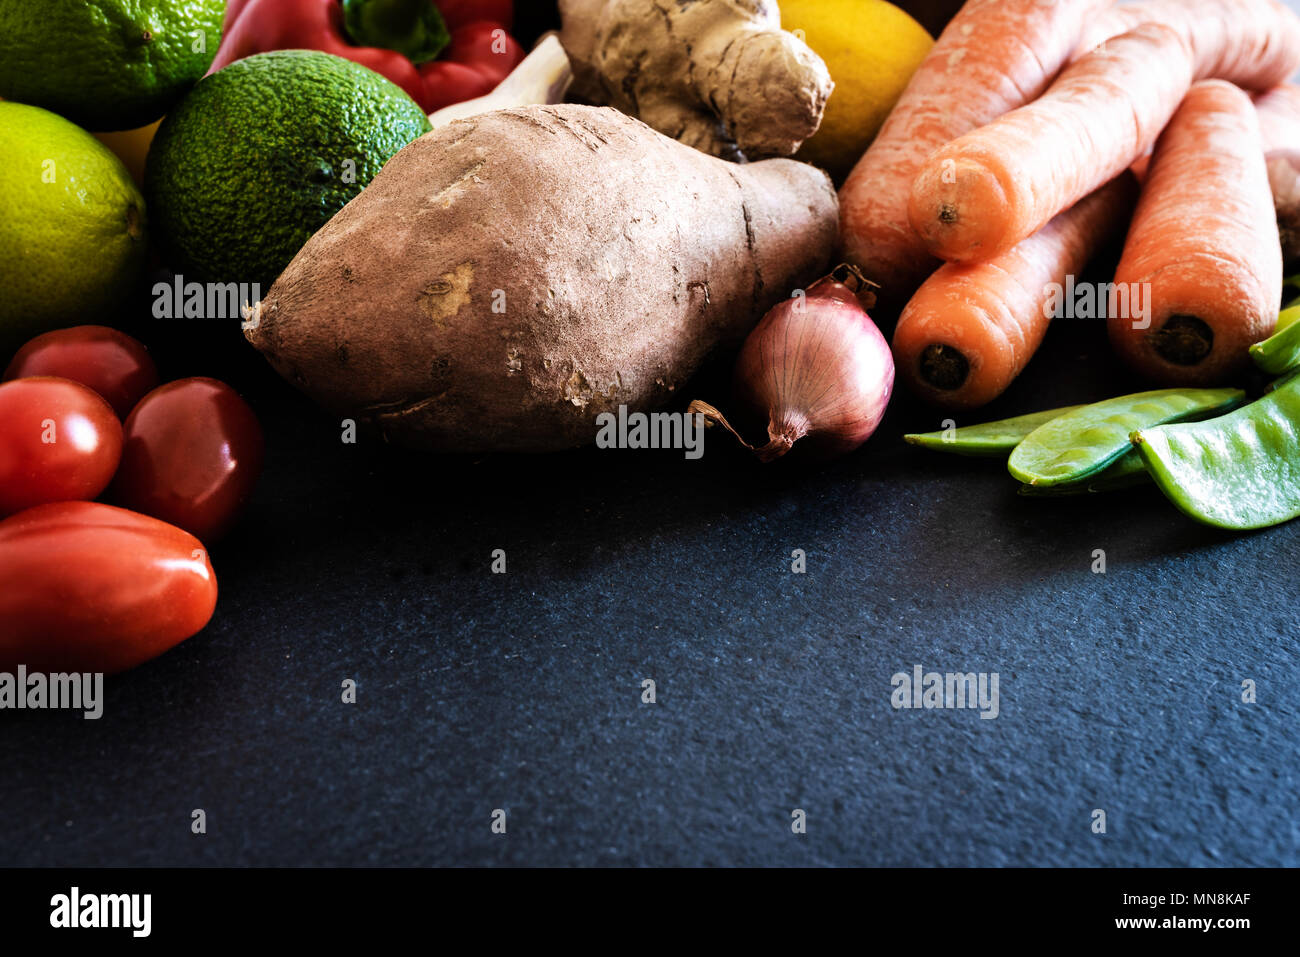 Matières premières fraîches fruits et légumes biologiques sur ardoise cuisine concept de saine alimentation Banque D'Images